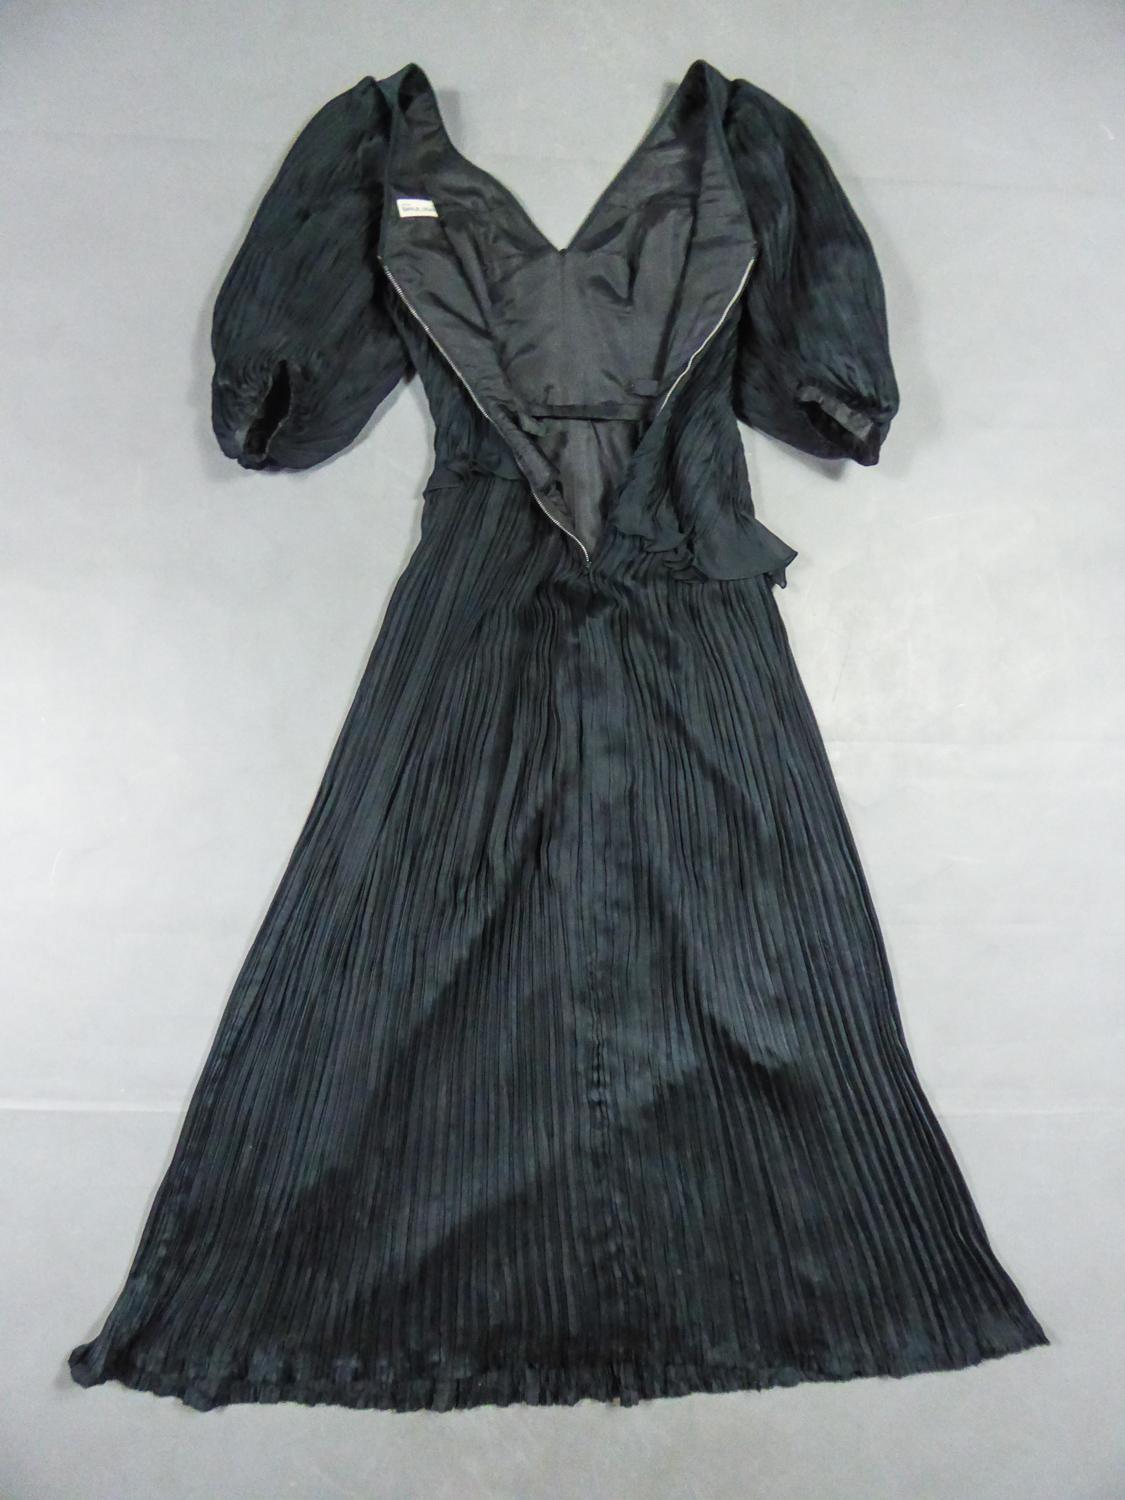 Ca. 1985-1990
Pariser Haute Couture

Schönes langes Abendkleid aus schwarzem Seidenkrepp von Emanuel Ungaro Haute Couture mit der Nummer 295-5-85 um 1985/1990. Hervorragender Kontrast zwischen der Asymmetrie des hüftumspielenden Mieders und dem